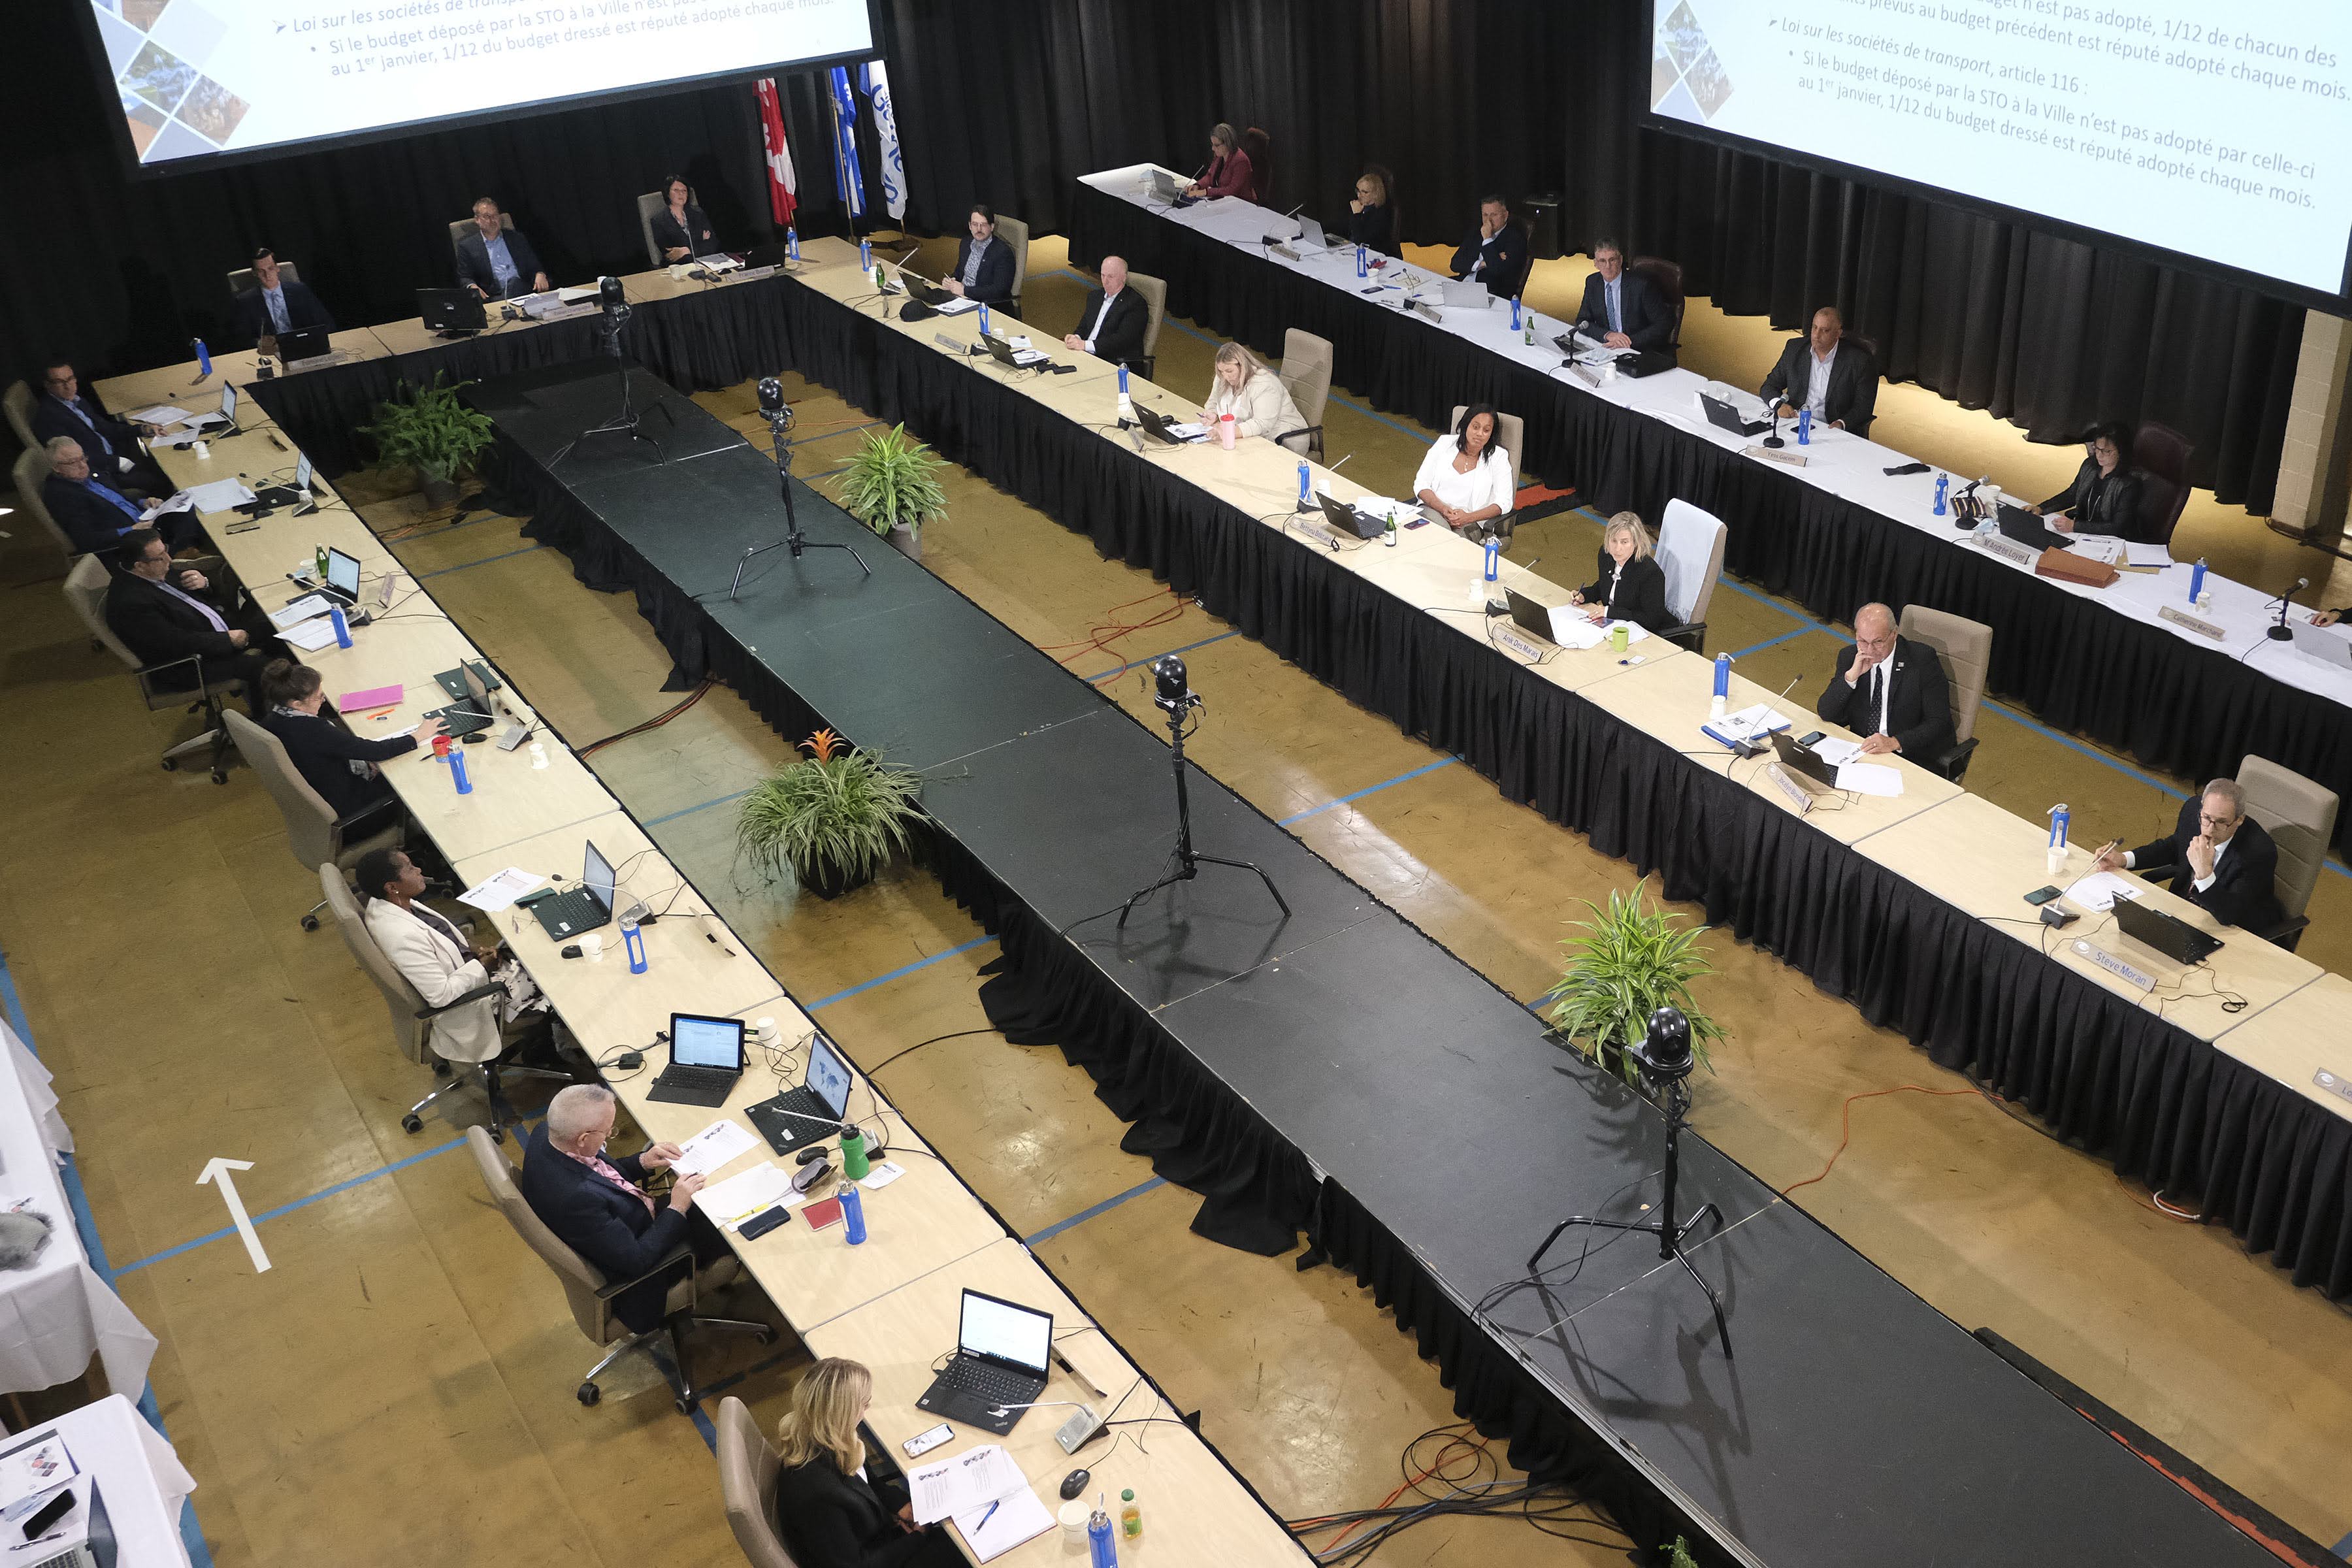 Le conseil municipal a adopté un budget équilibré de 699,5 millions $, assorti d’une hausse de taxes de 1,9% et d’une augmentation des dépenses de 4,2%, l’une des deux plus importantes de la dernière décennie à Gatineau.